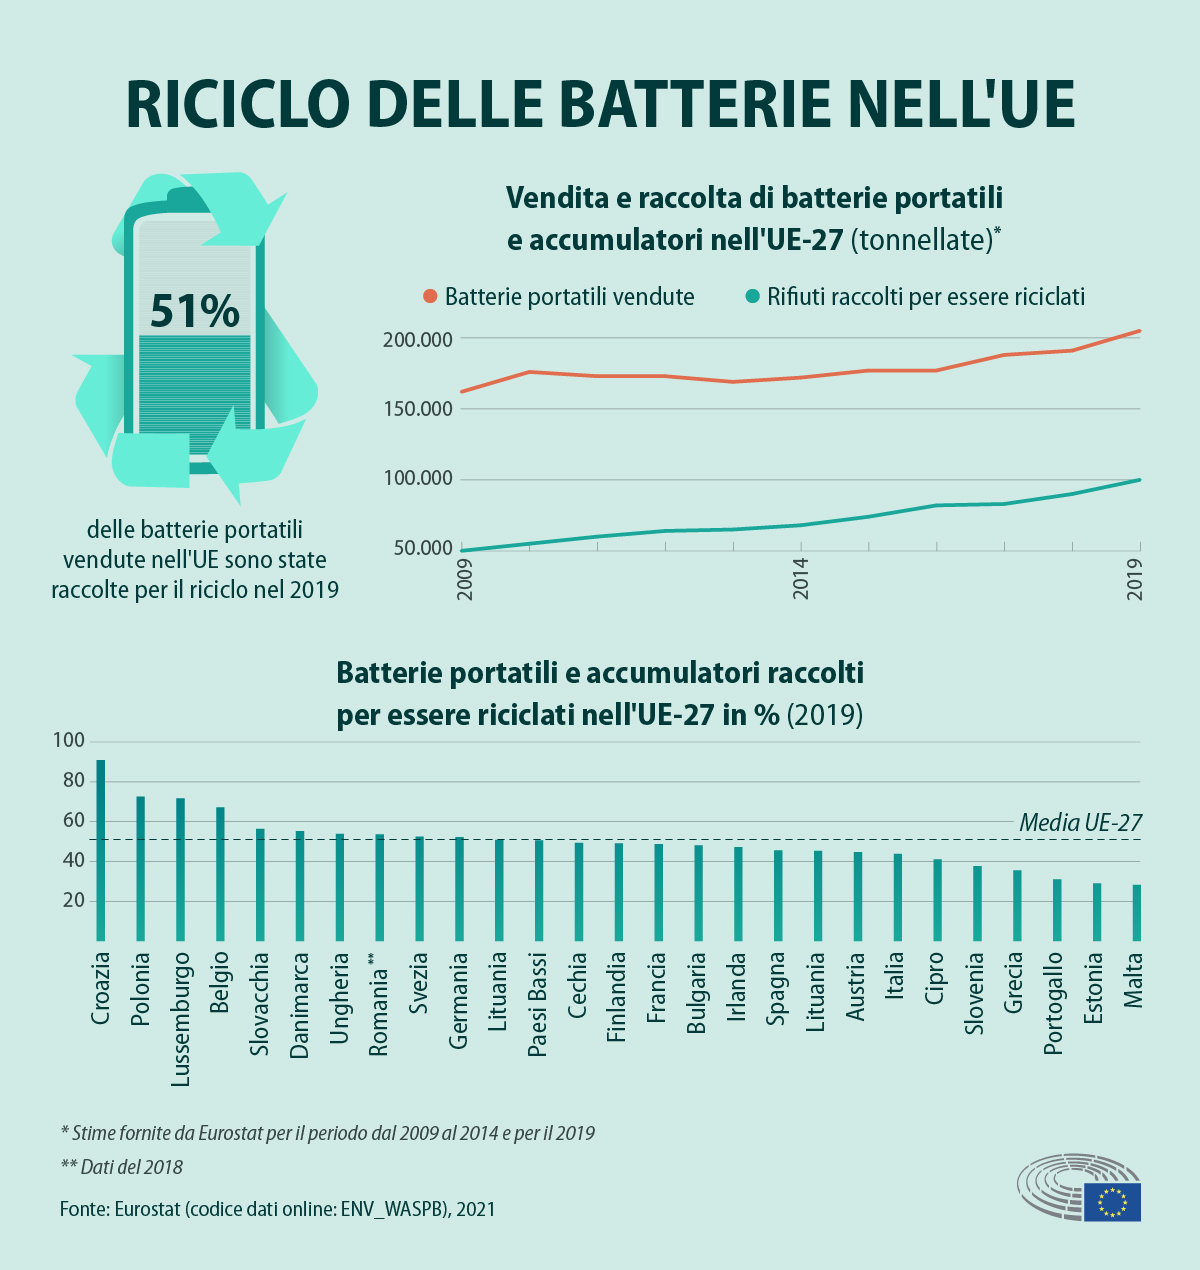 Infografica sul riciclo delle batterie nell'UE: Il 51% delle batterie portatili venduete nell'UE sono state raccolte per il riciclo nel 2019; Le batterie portatili vendute sono passate da circa 150.000 unità del 2009 a oltre 200.000 unità nel 2019, mentre i rifiuti raccolti sono passati da 50.000 unità nel 2009 a 100.000 unità nel 2019; La media Europea di batterie portatili e accumulatori raccolti per il riciclo è del 50%, la Croazia è al primo posto con il 90% di raccolta per il riciclo e malta all'ultimo con il 30%